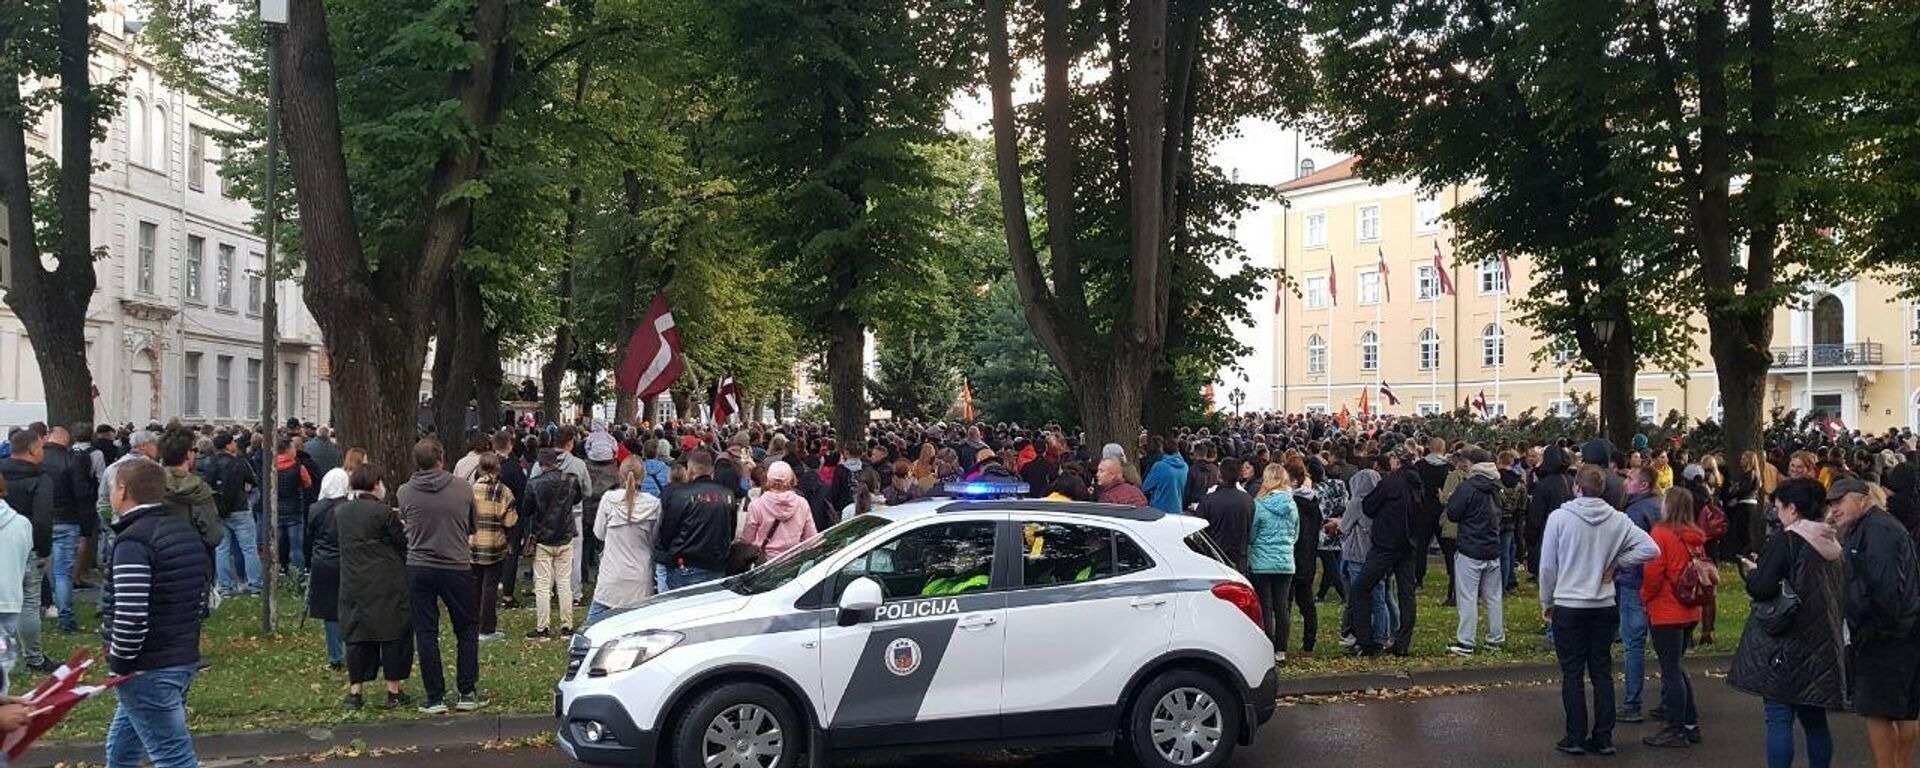 В Риге люди стекаются к Рижскому замку на акцию протеста против обязательной вакцинации - Sputnik Латвия, 1920, 18.08.2021